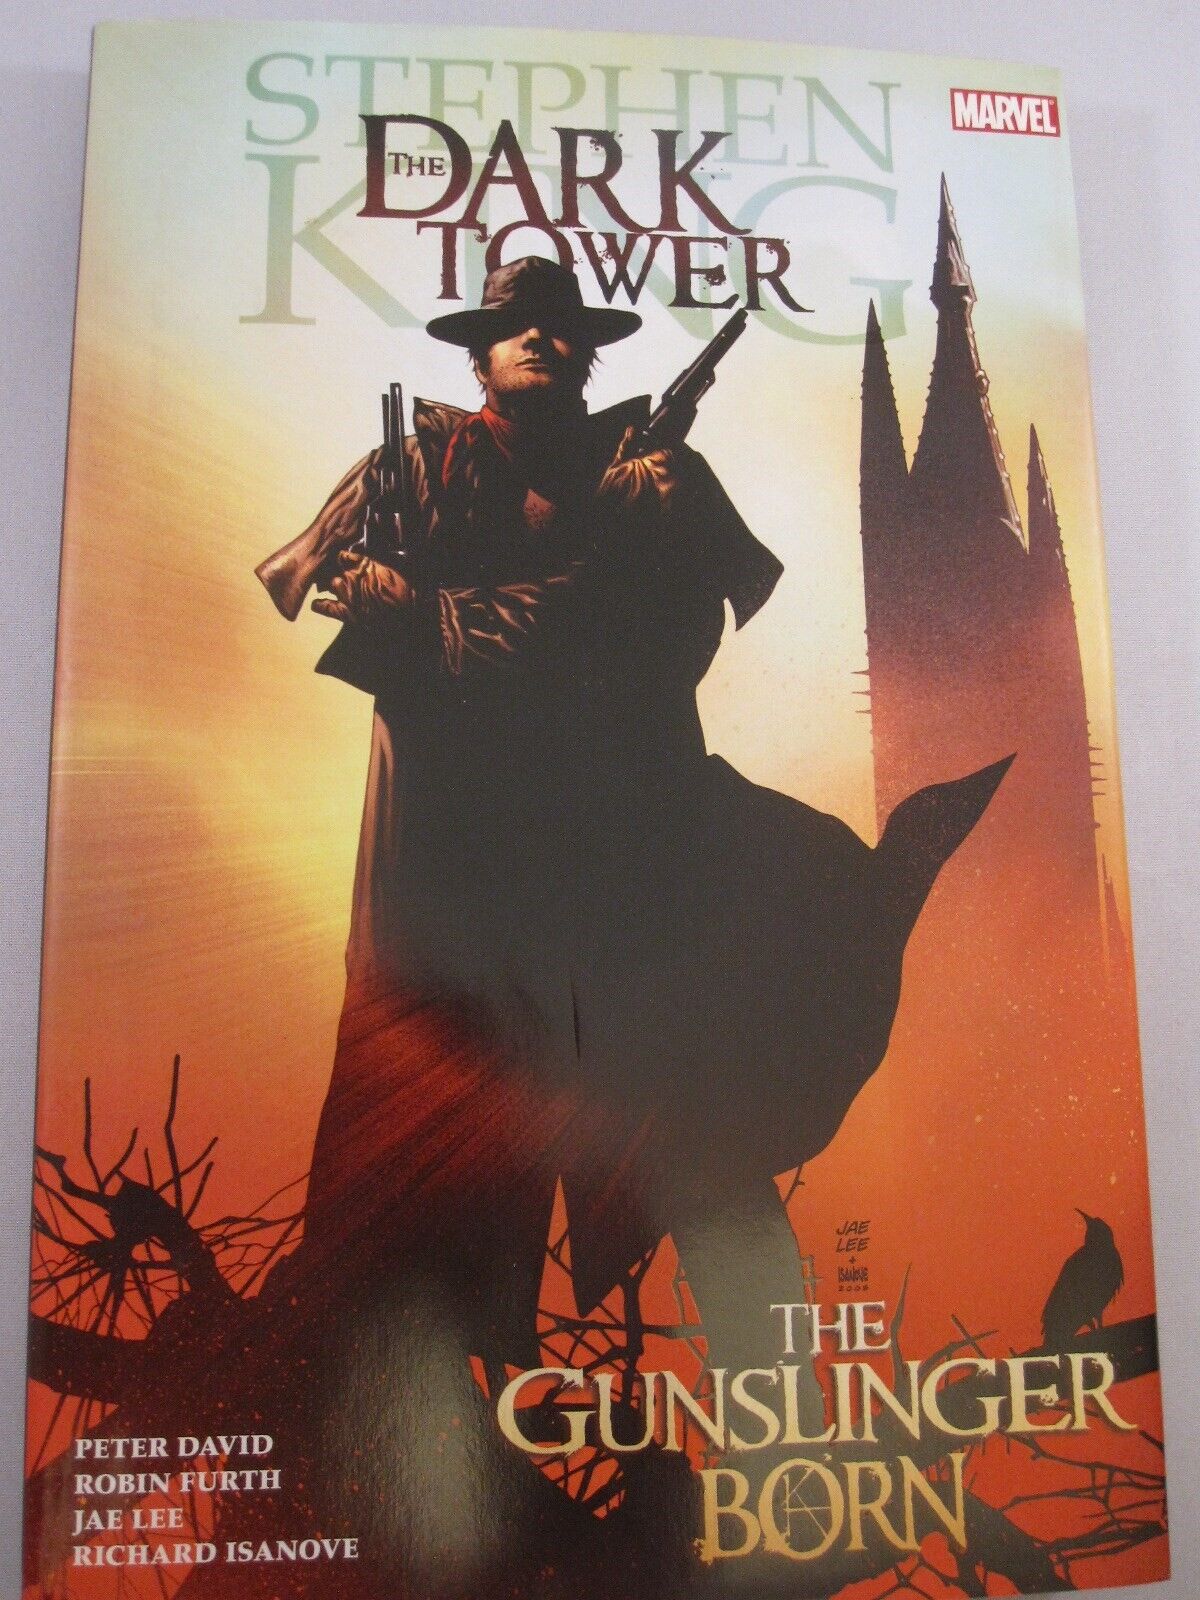 Stephen King DARK TOWER GUNSLINGER BORN HC Hardcover $24.99srp SEALED NEW NM